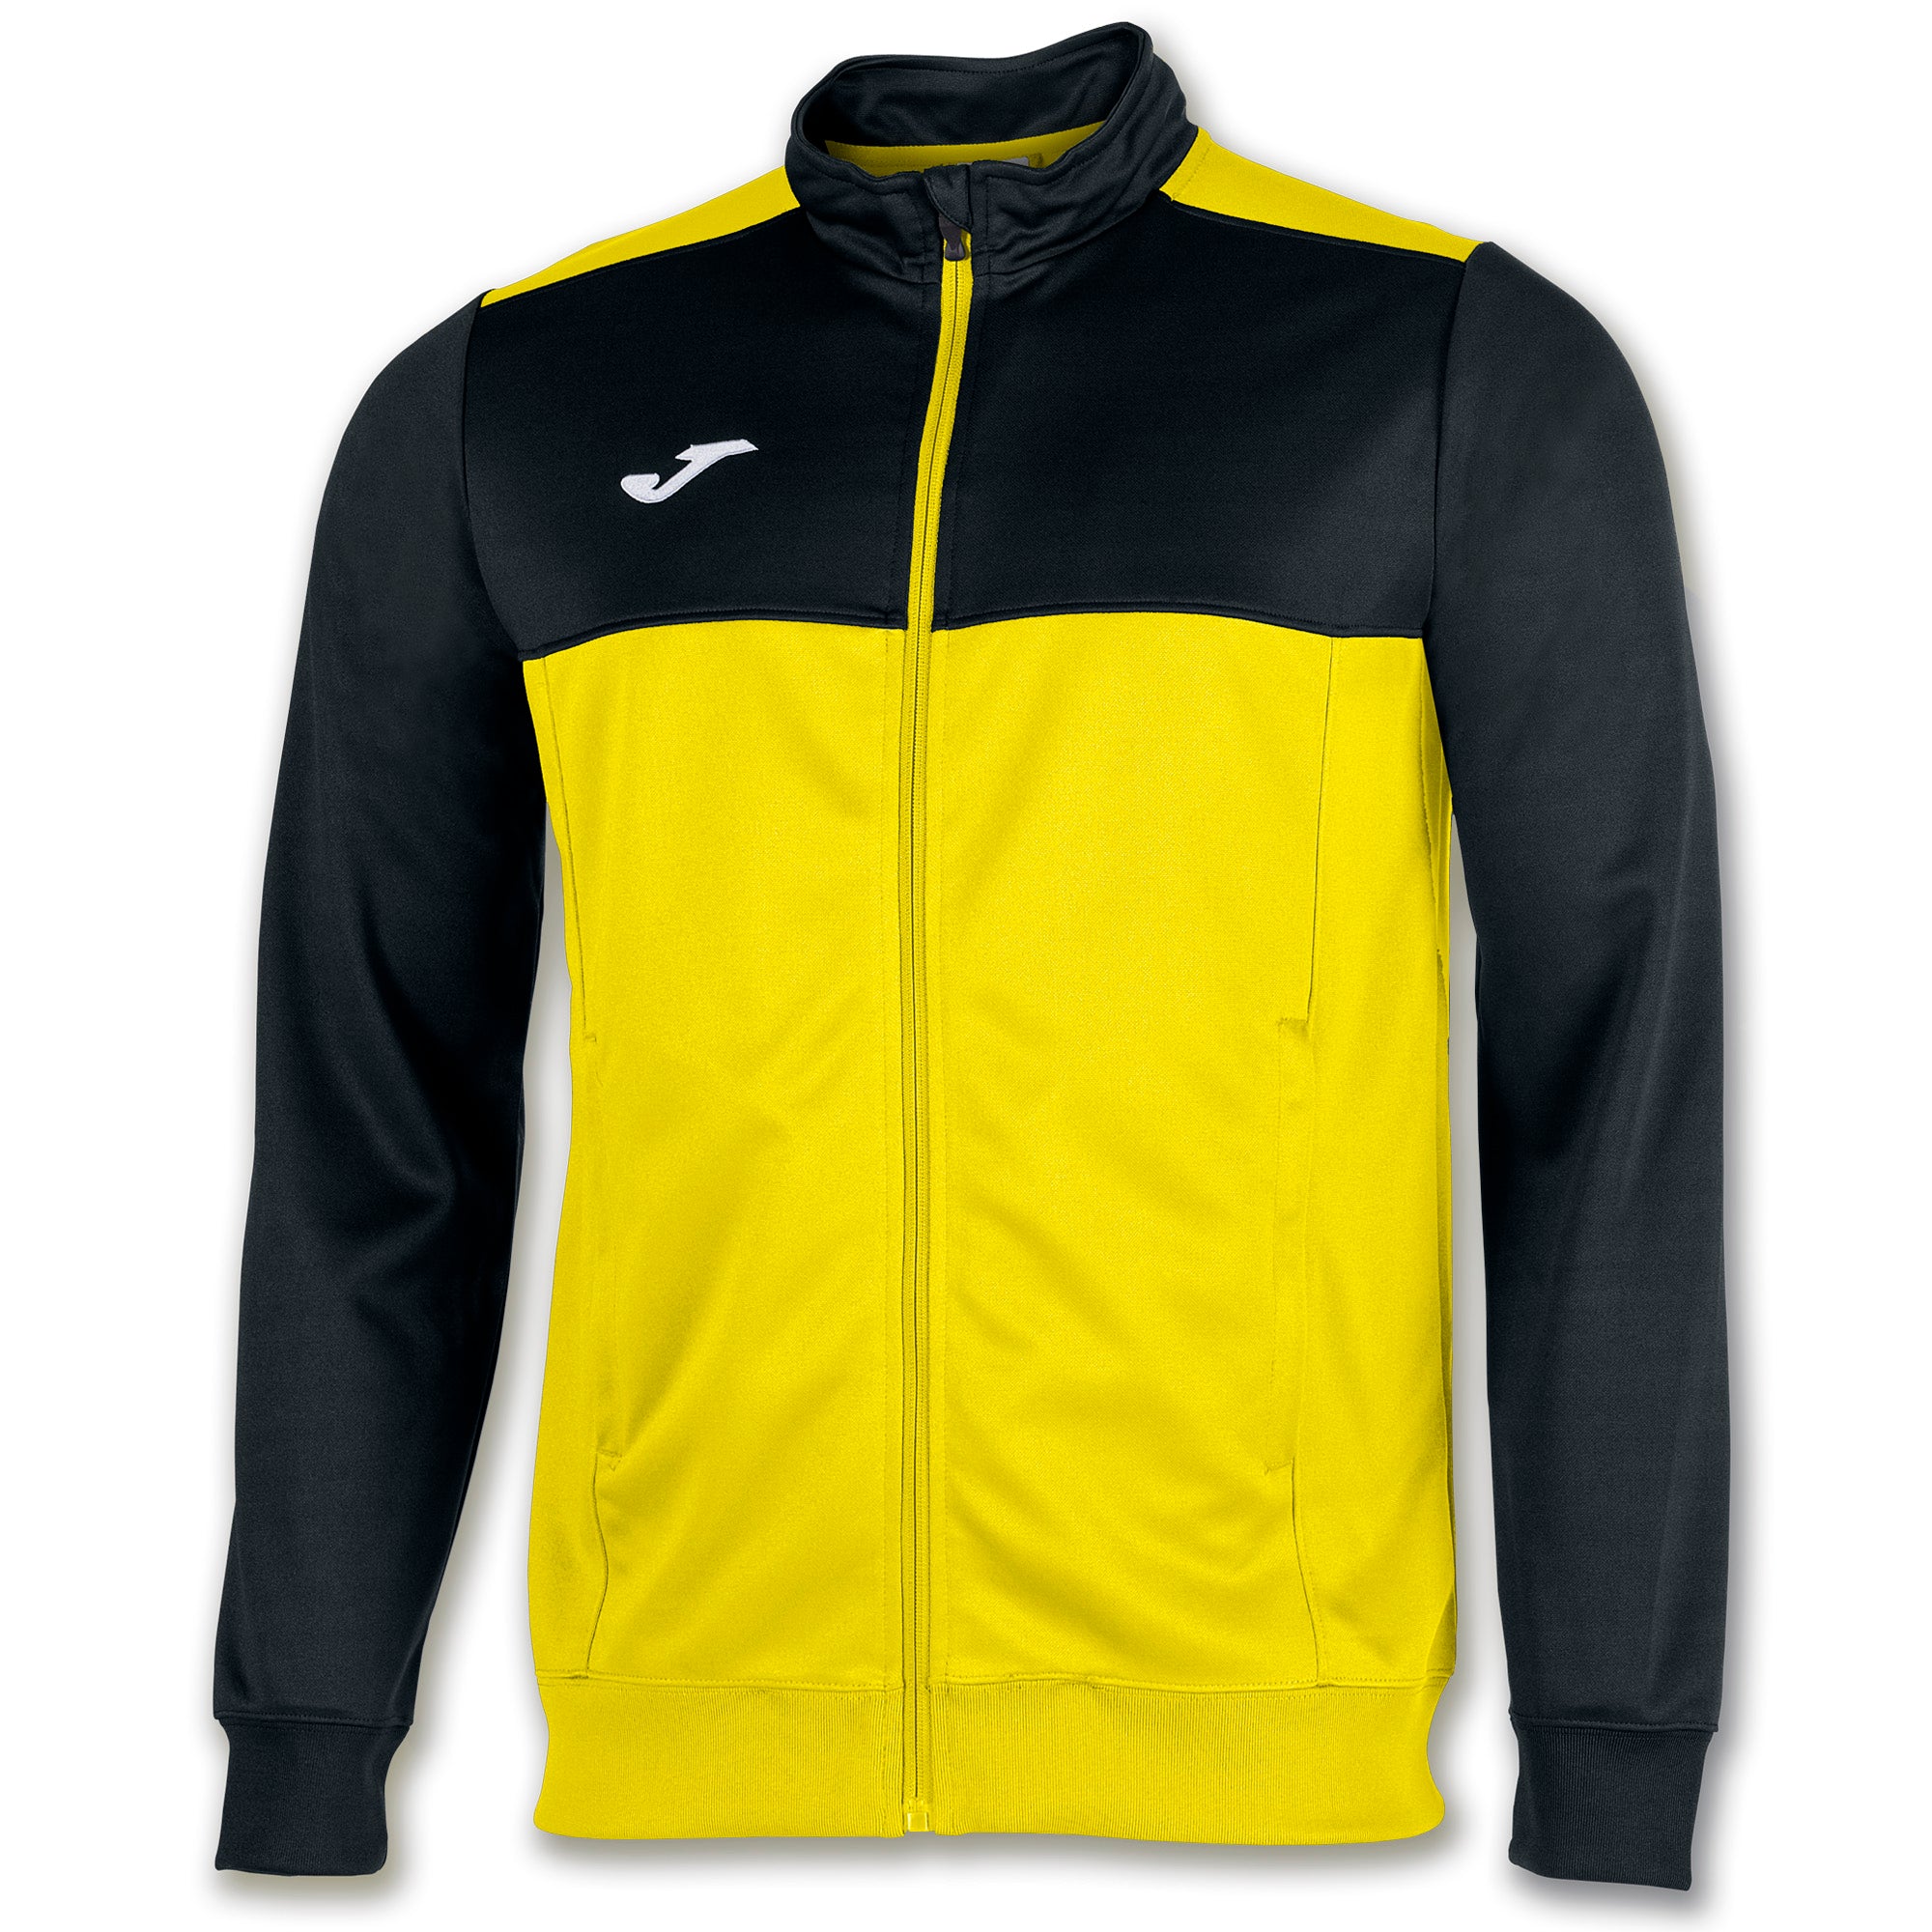 Winner Sweat Jacket - ITA Sports Shop